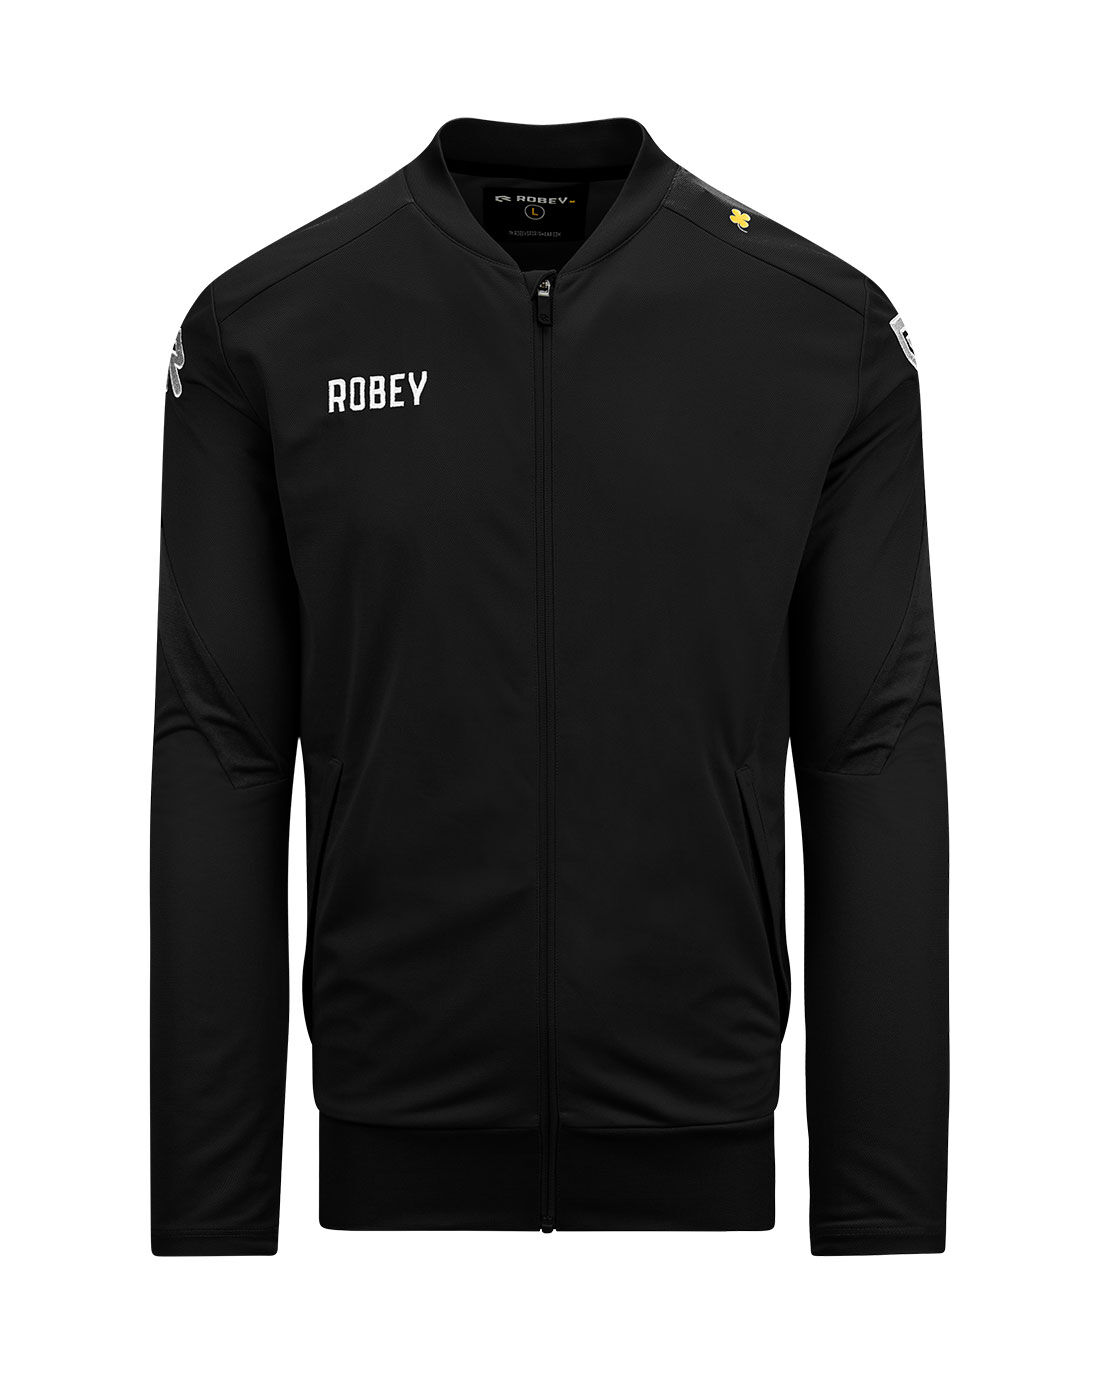 Track jackets | robeysportswear.com